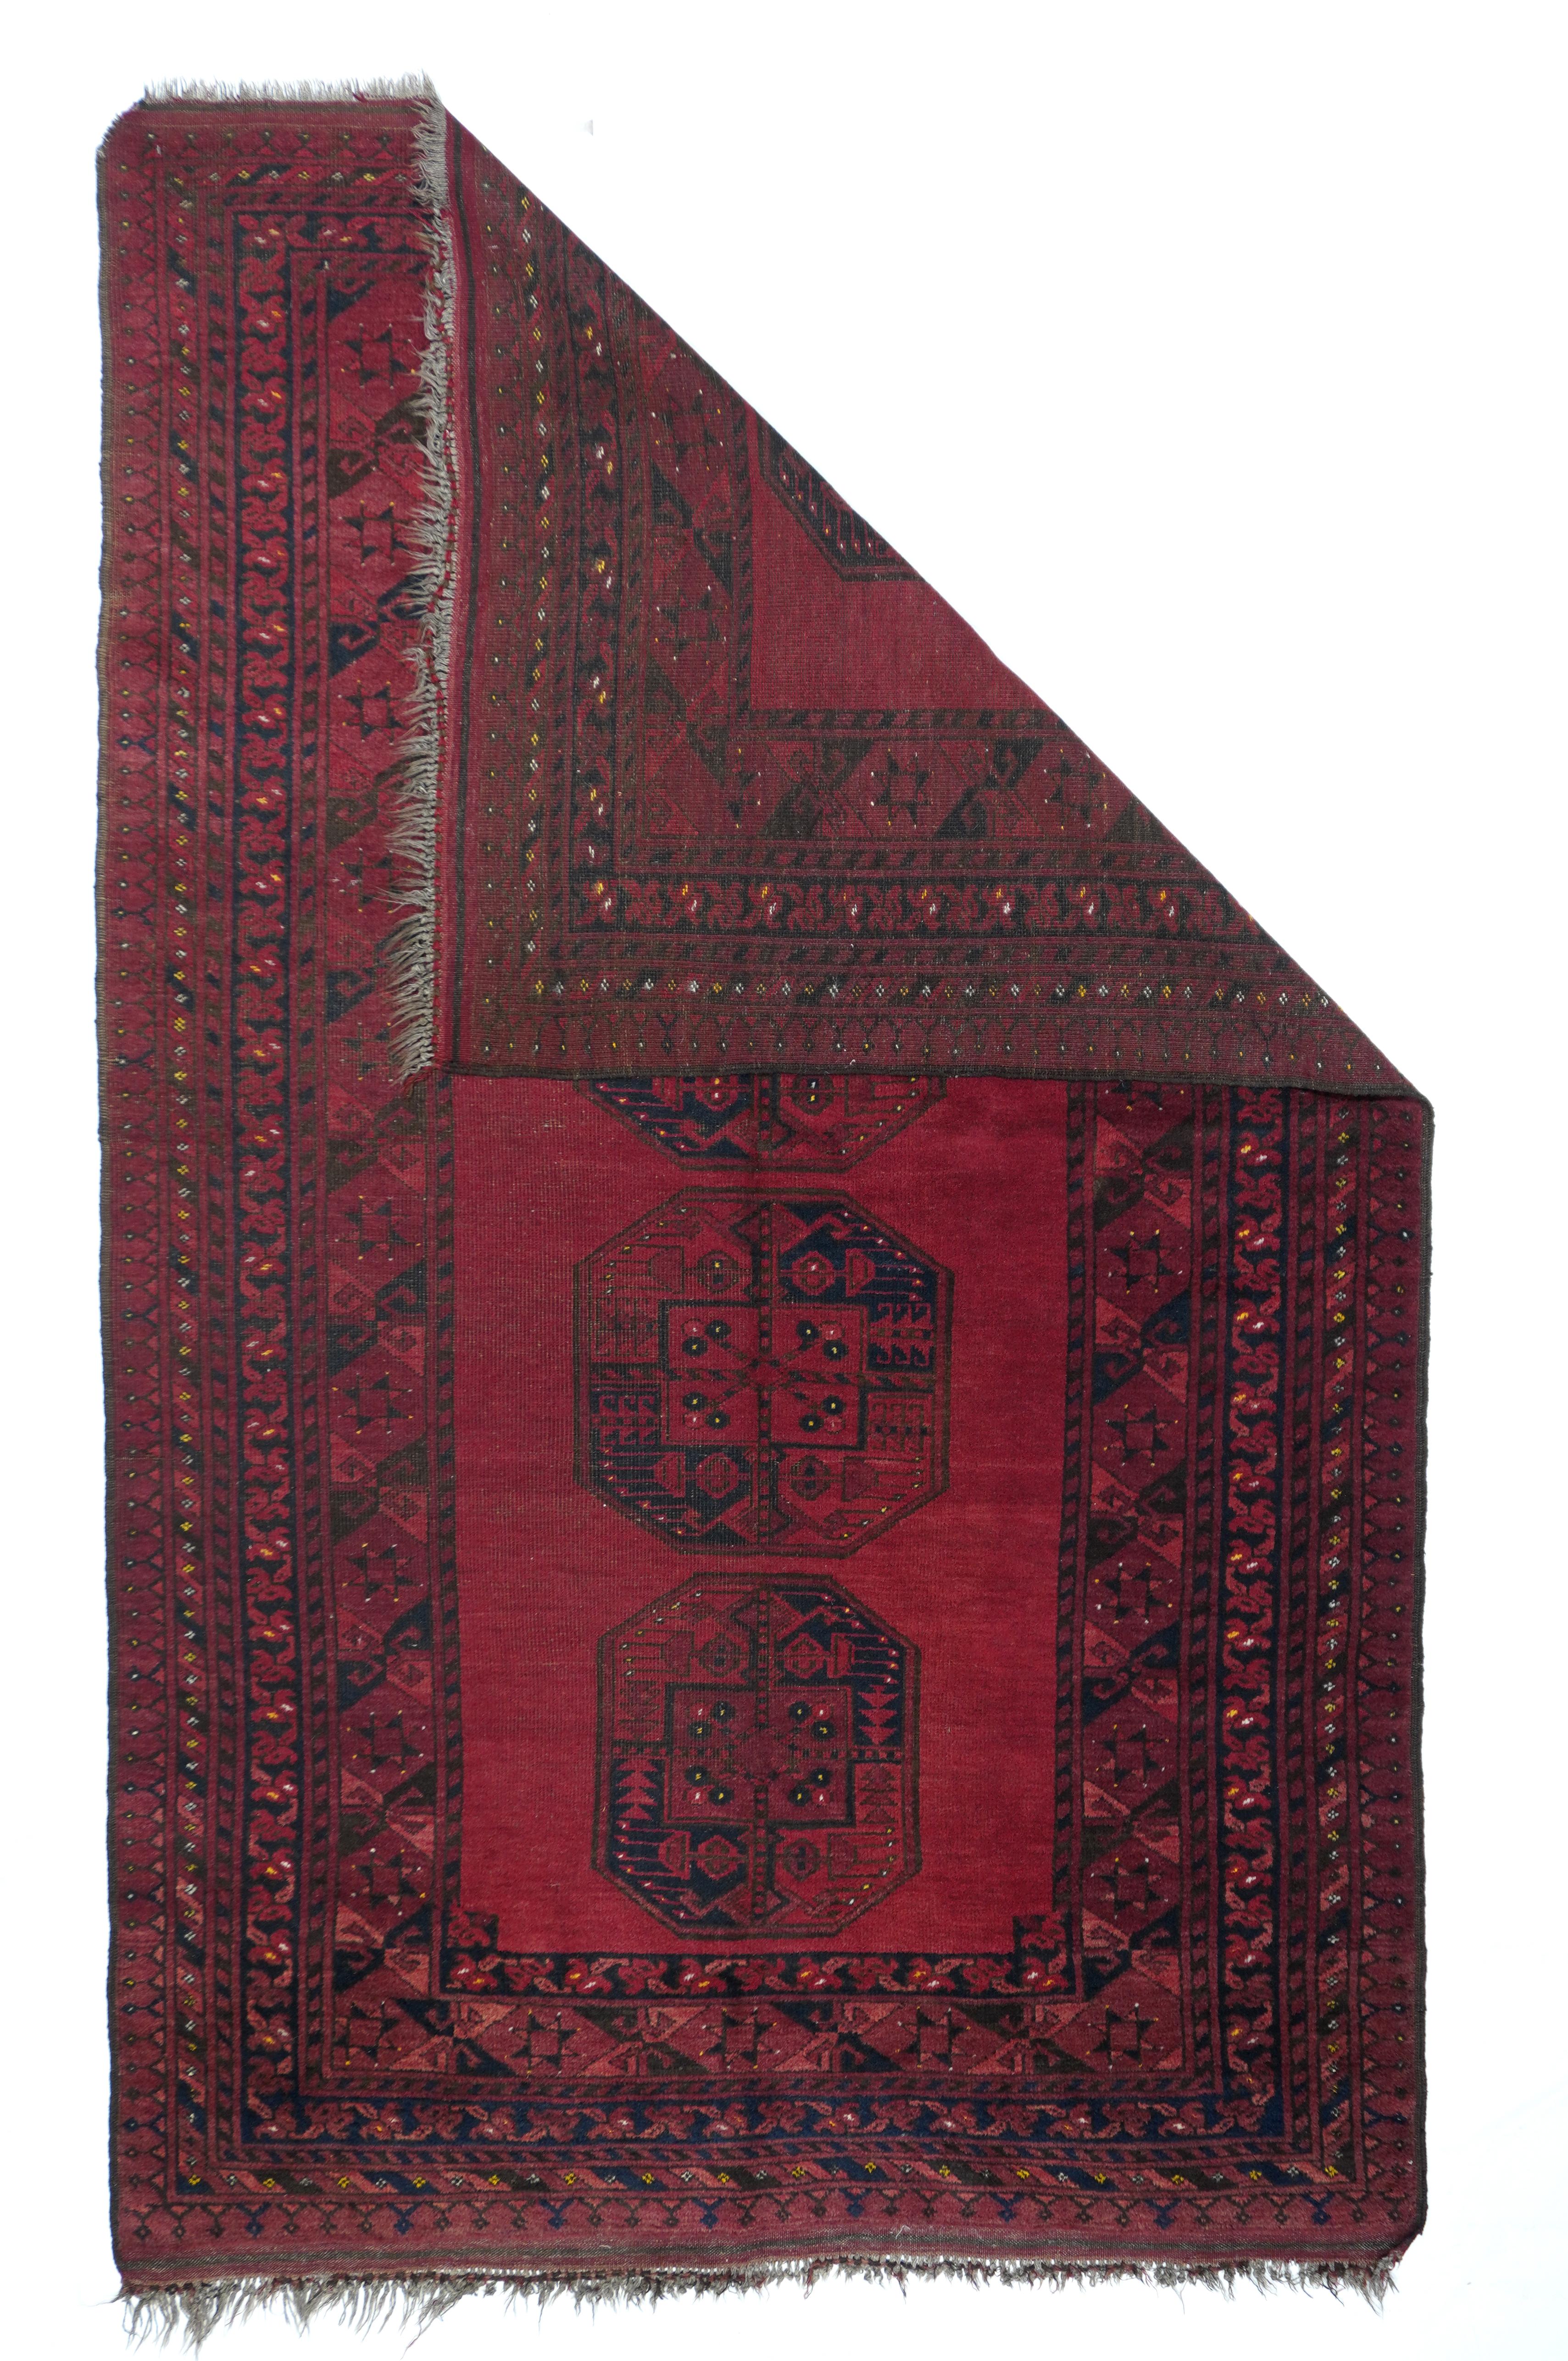 Antiker afghanischer Teppich 5' x 8'2''. Den roten Grund dieser nomadischen Streuung zieren lediglich vier achteckige turkmenische Guls, die in Schwarz und Rot geviertelt sind.  Sechseck/Stern und X als Hauptbordüre im Saryk-Stil. Äußerste